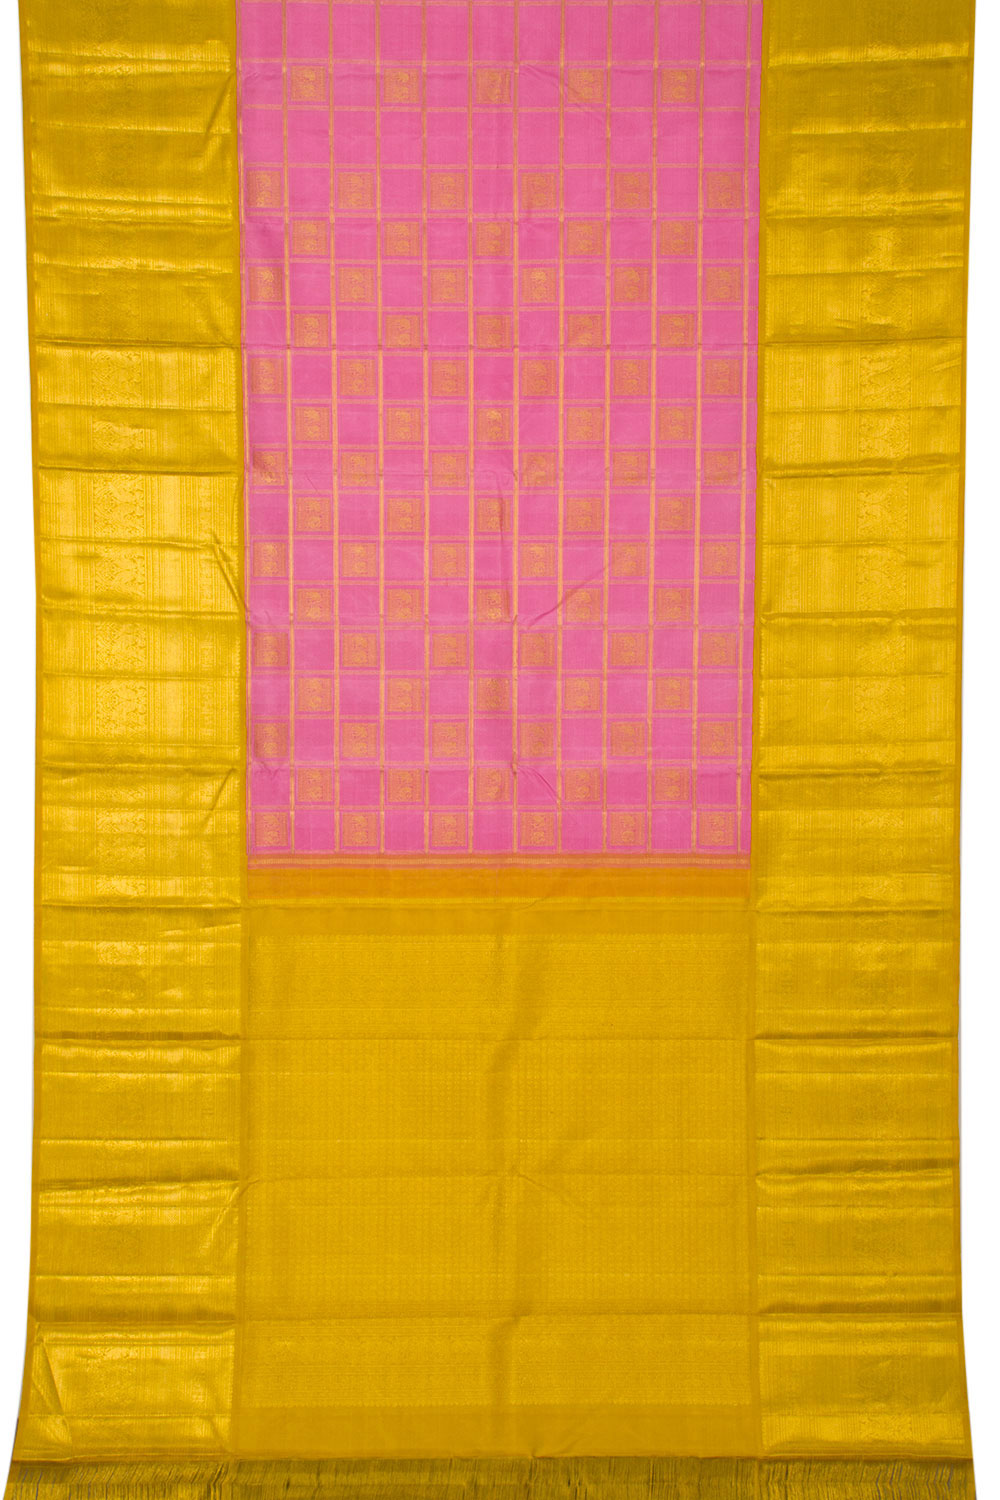 Pink Handloom Bridal Kanjivaram Silk Saree - Avishya